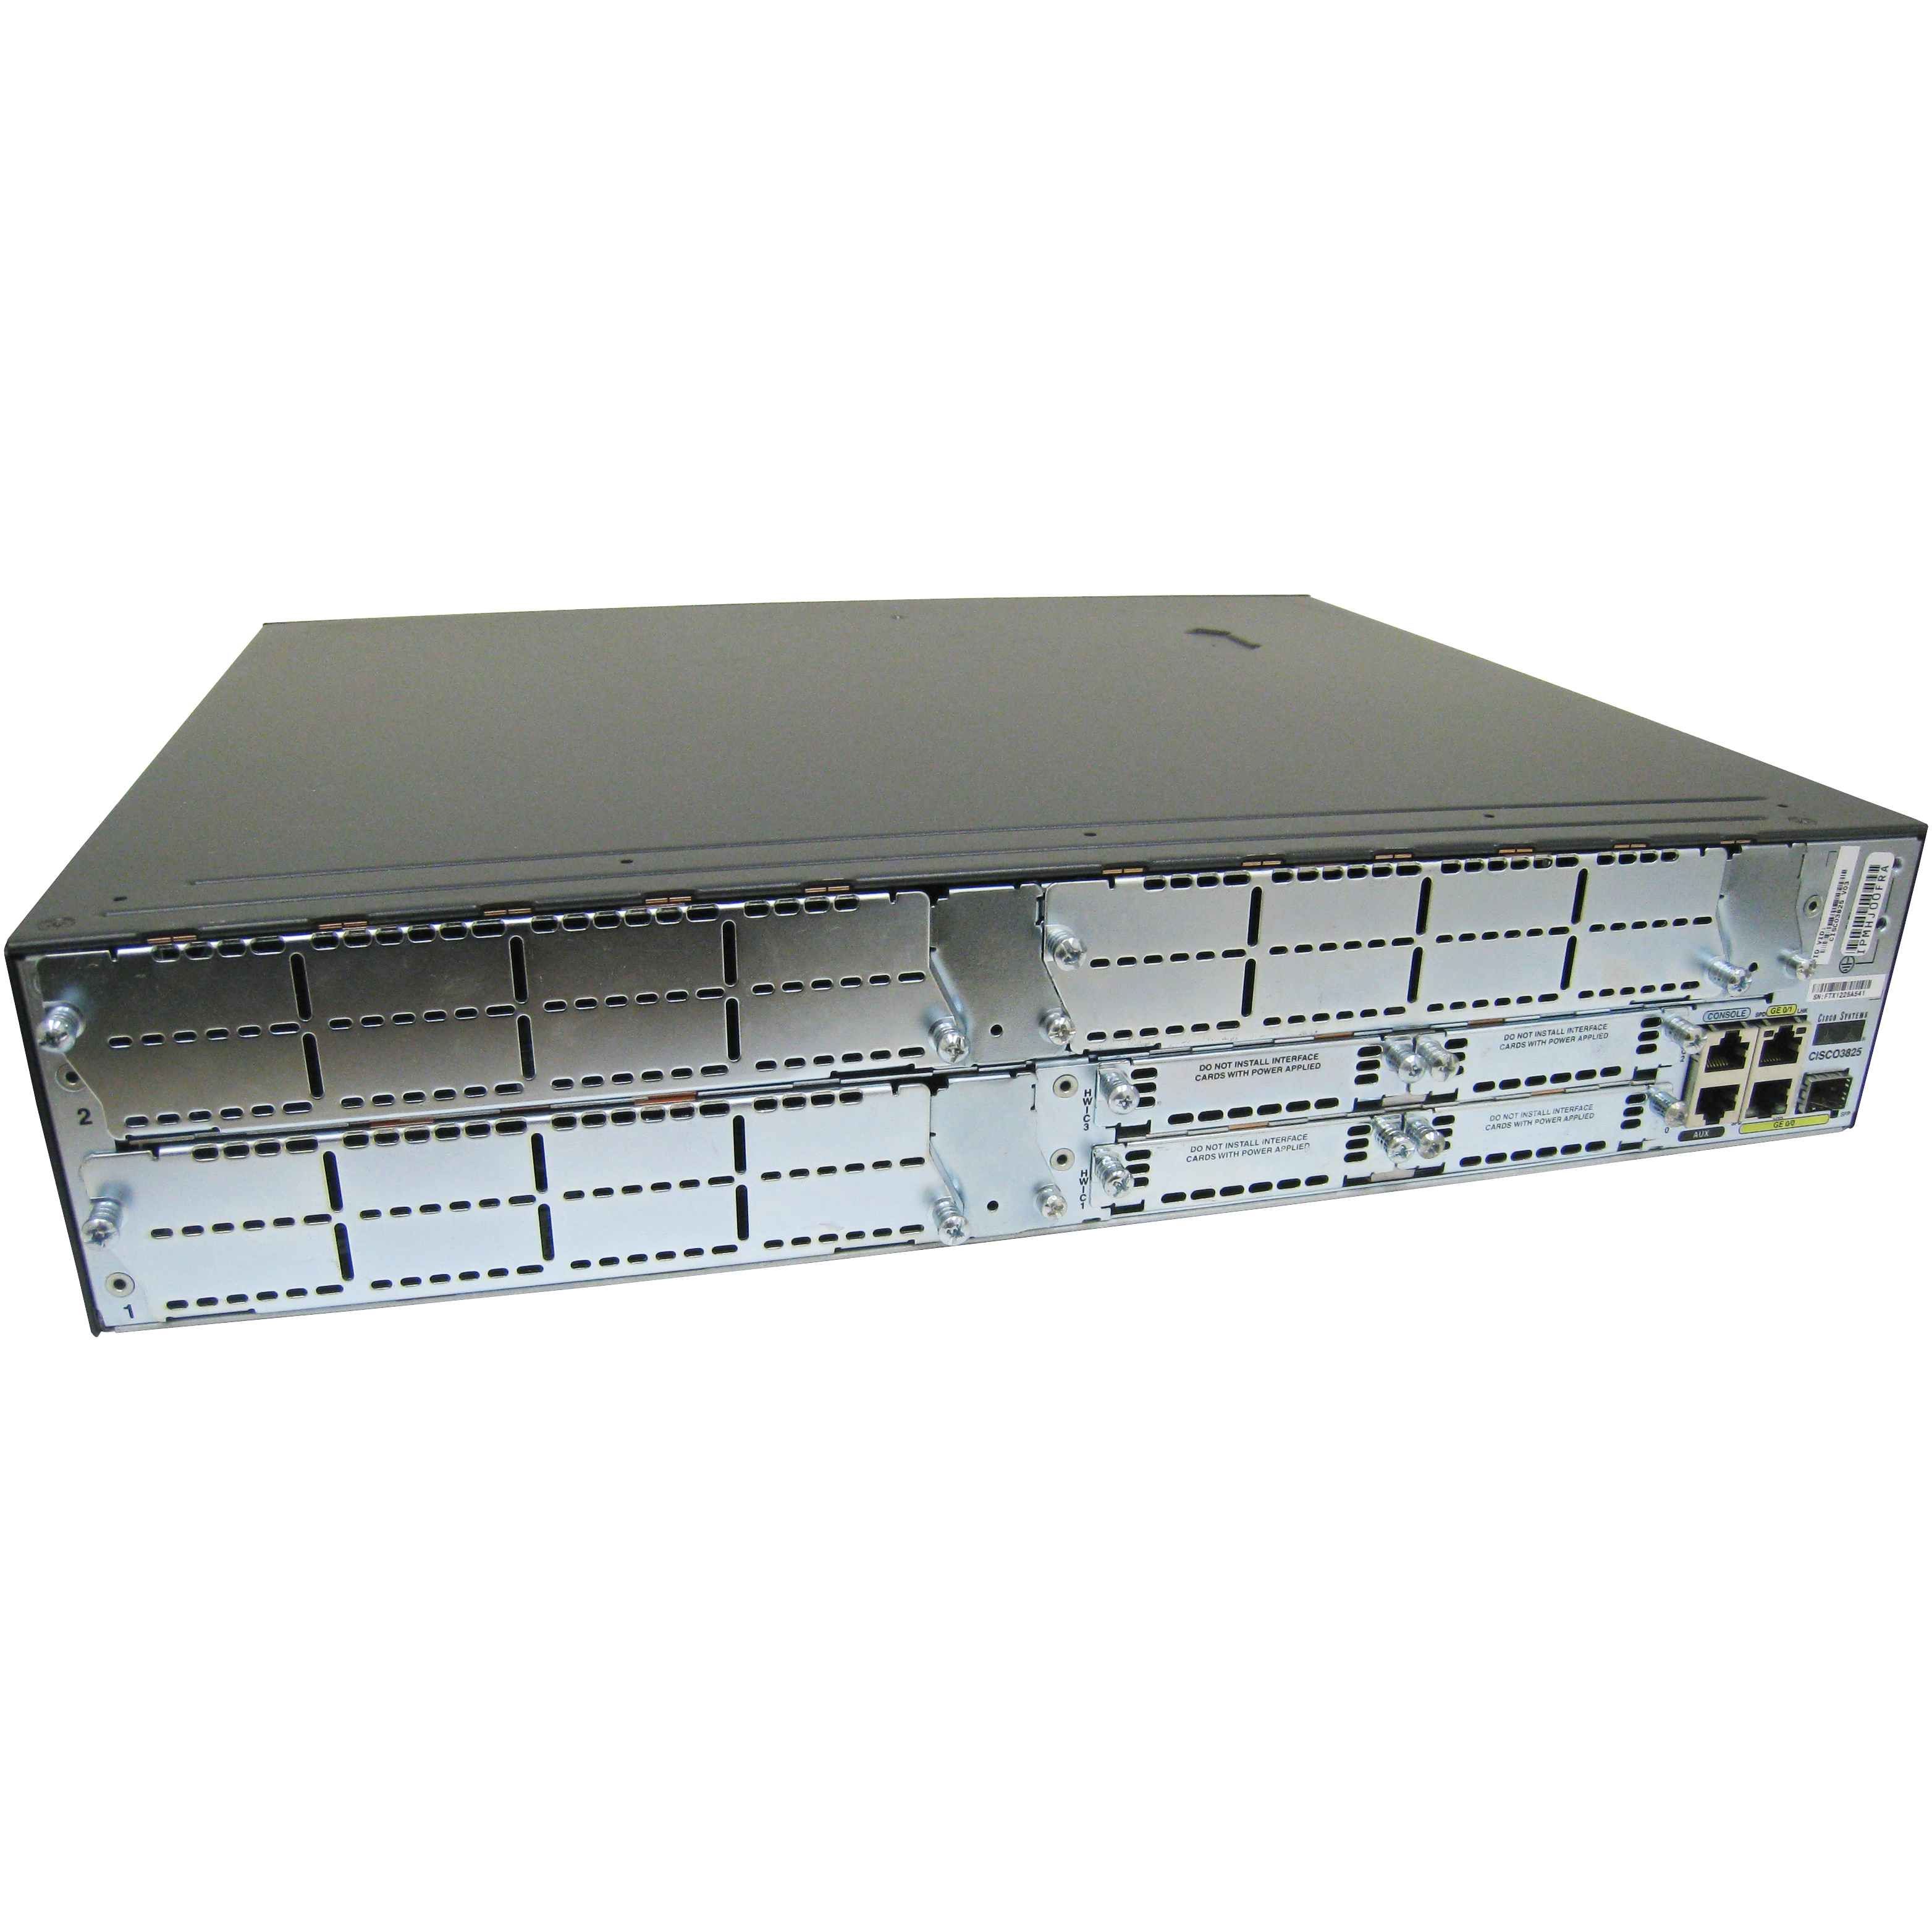 Cisco CISCO3825-HSEC/K9-SSL-3